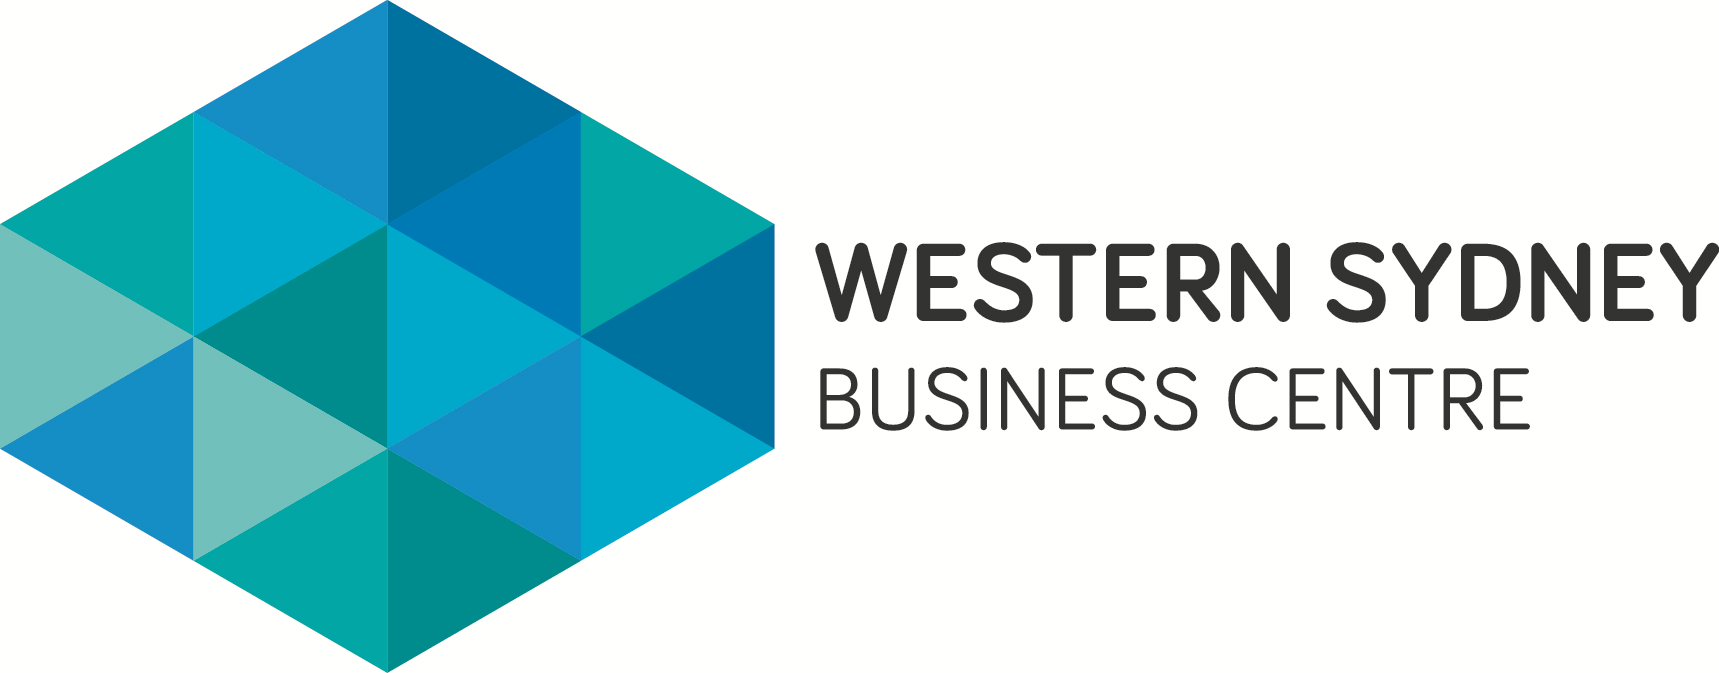 Western Sydney Business